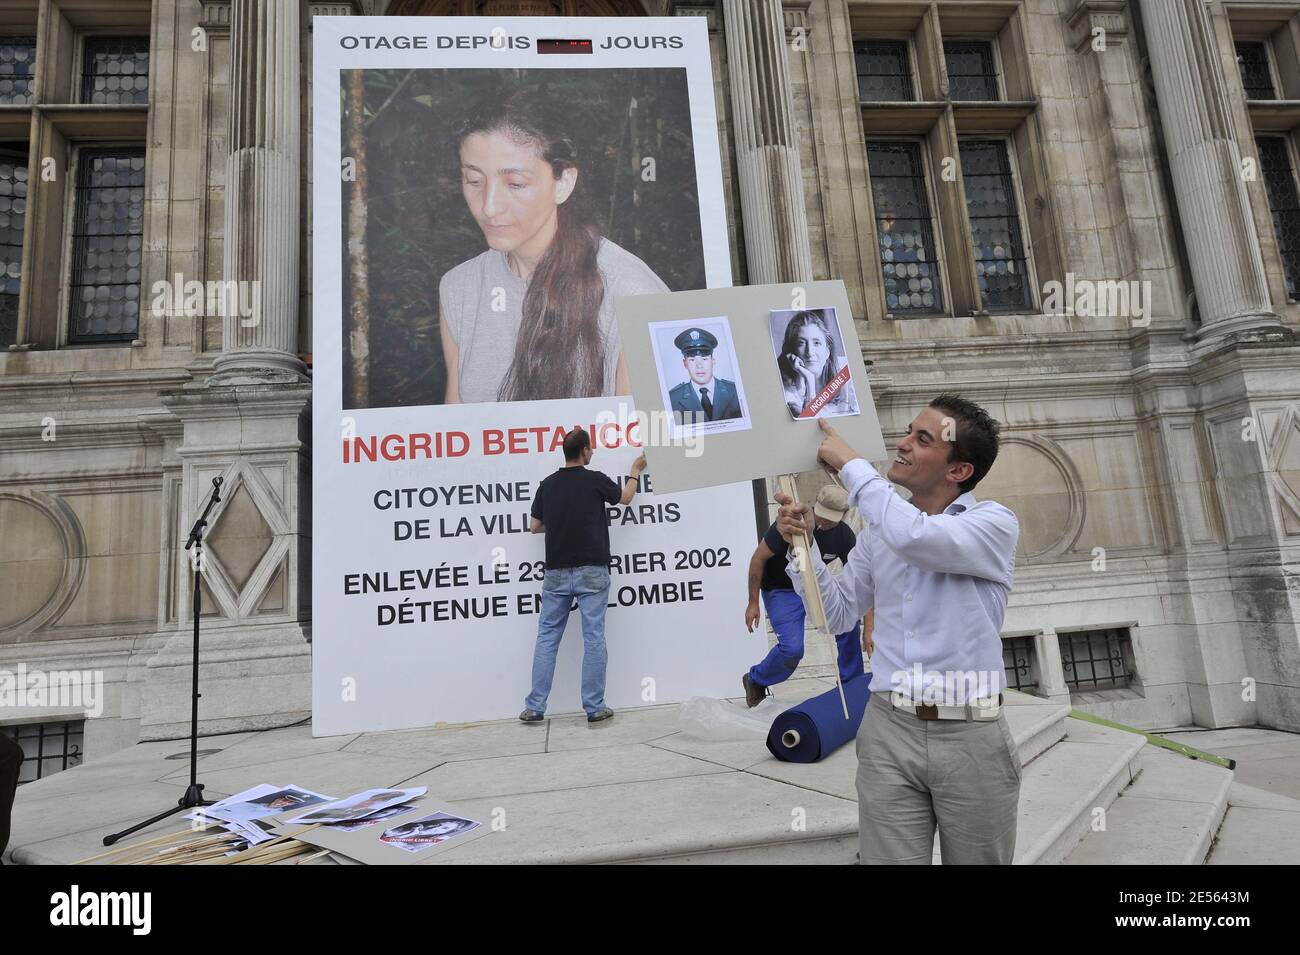 Herve Marro visto prima di un incontro per celebrare la liberazione di ostaggio colombiano-francese Ingrid Betancourt a Parigi Cityhall, Francia il 3 luglio 2008. Foto di Abd Rabbo-Mousse/ABACAPRESS.COM Foto Stock